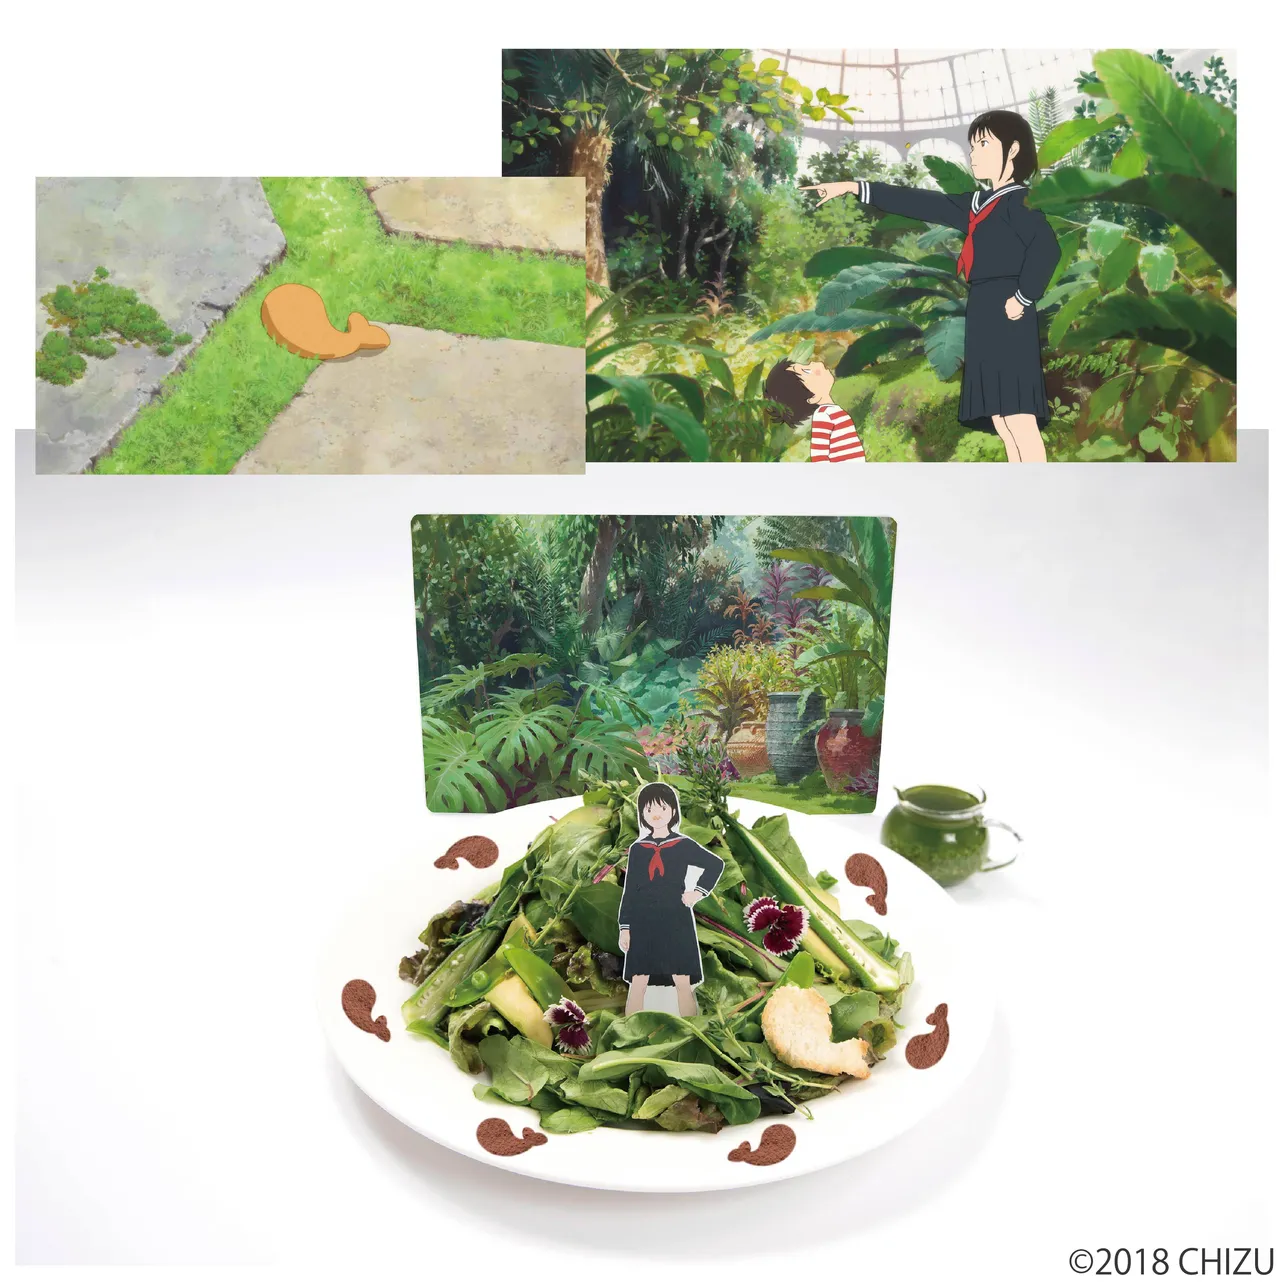 「未来のミライ」オリジナルコラボメニュー「ミライちゃんの植物園サラダパスタ」(1290円)